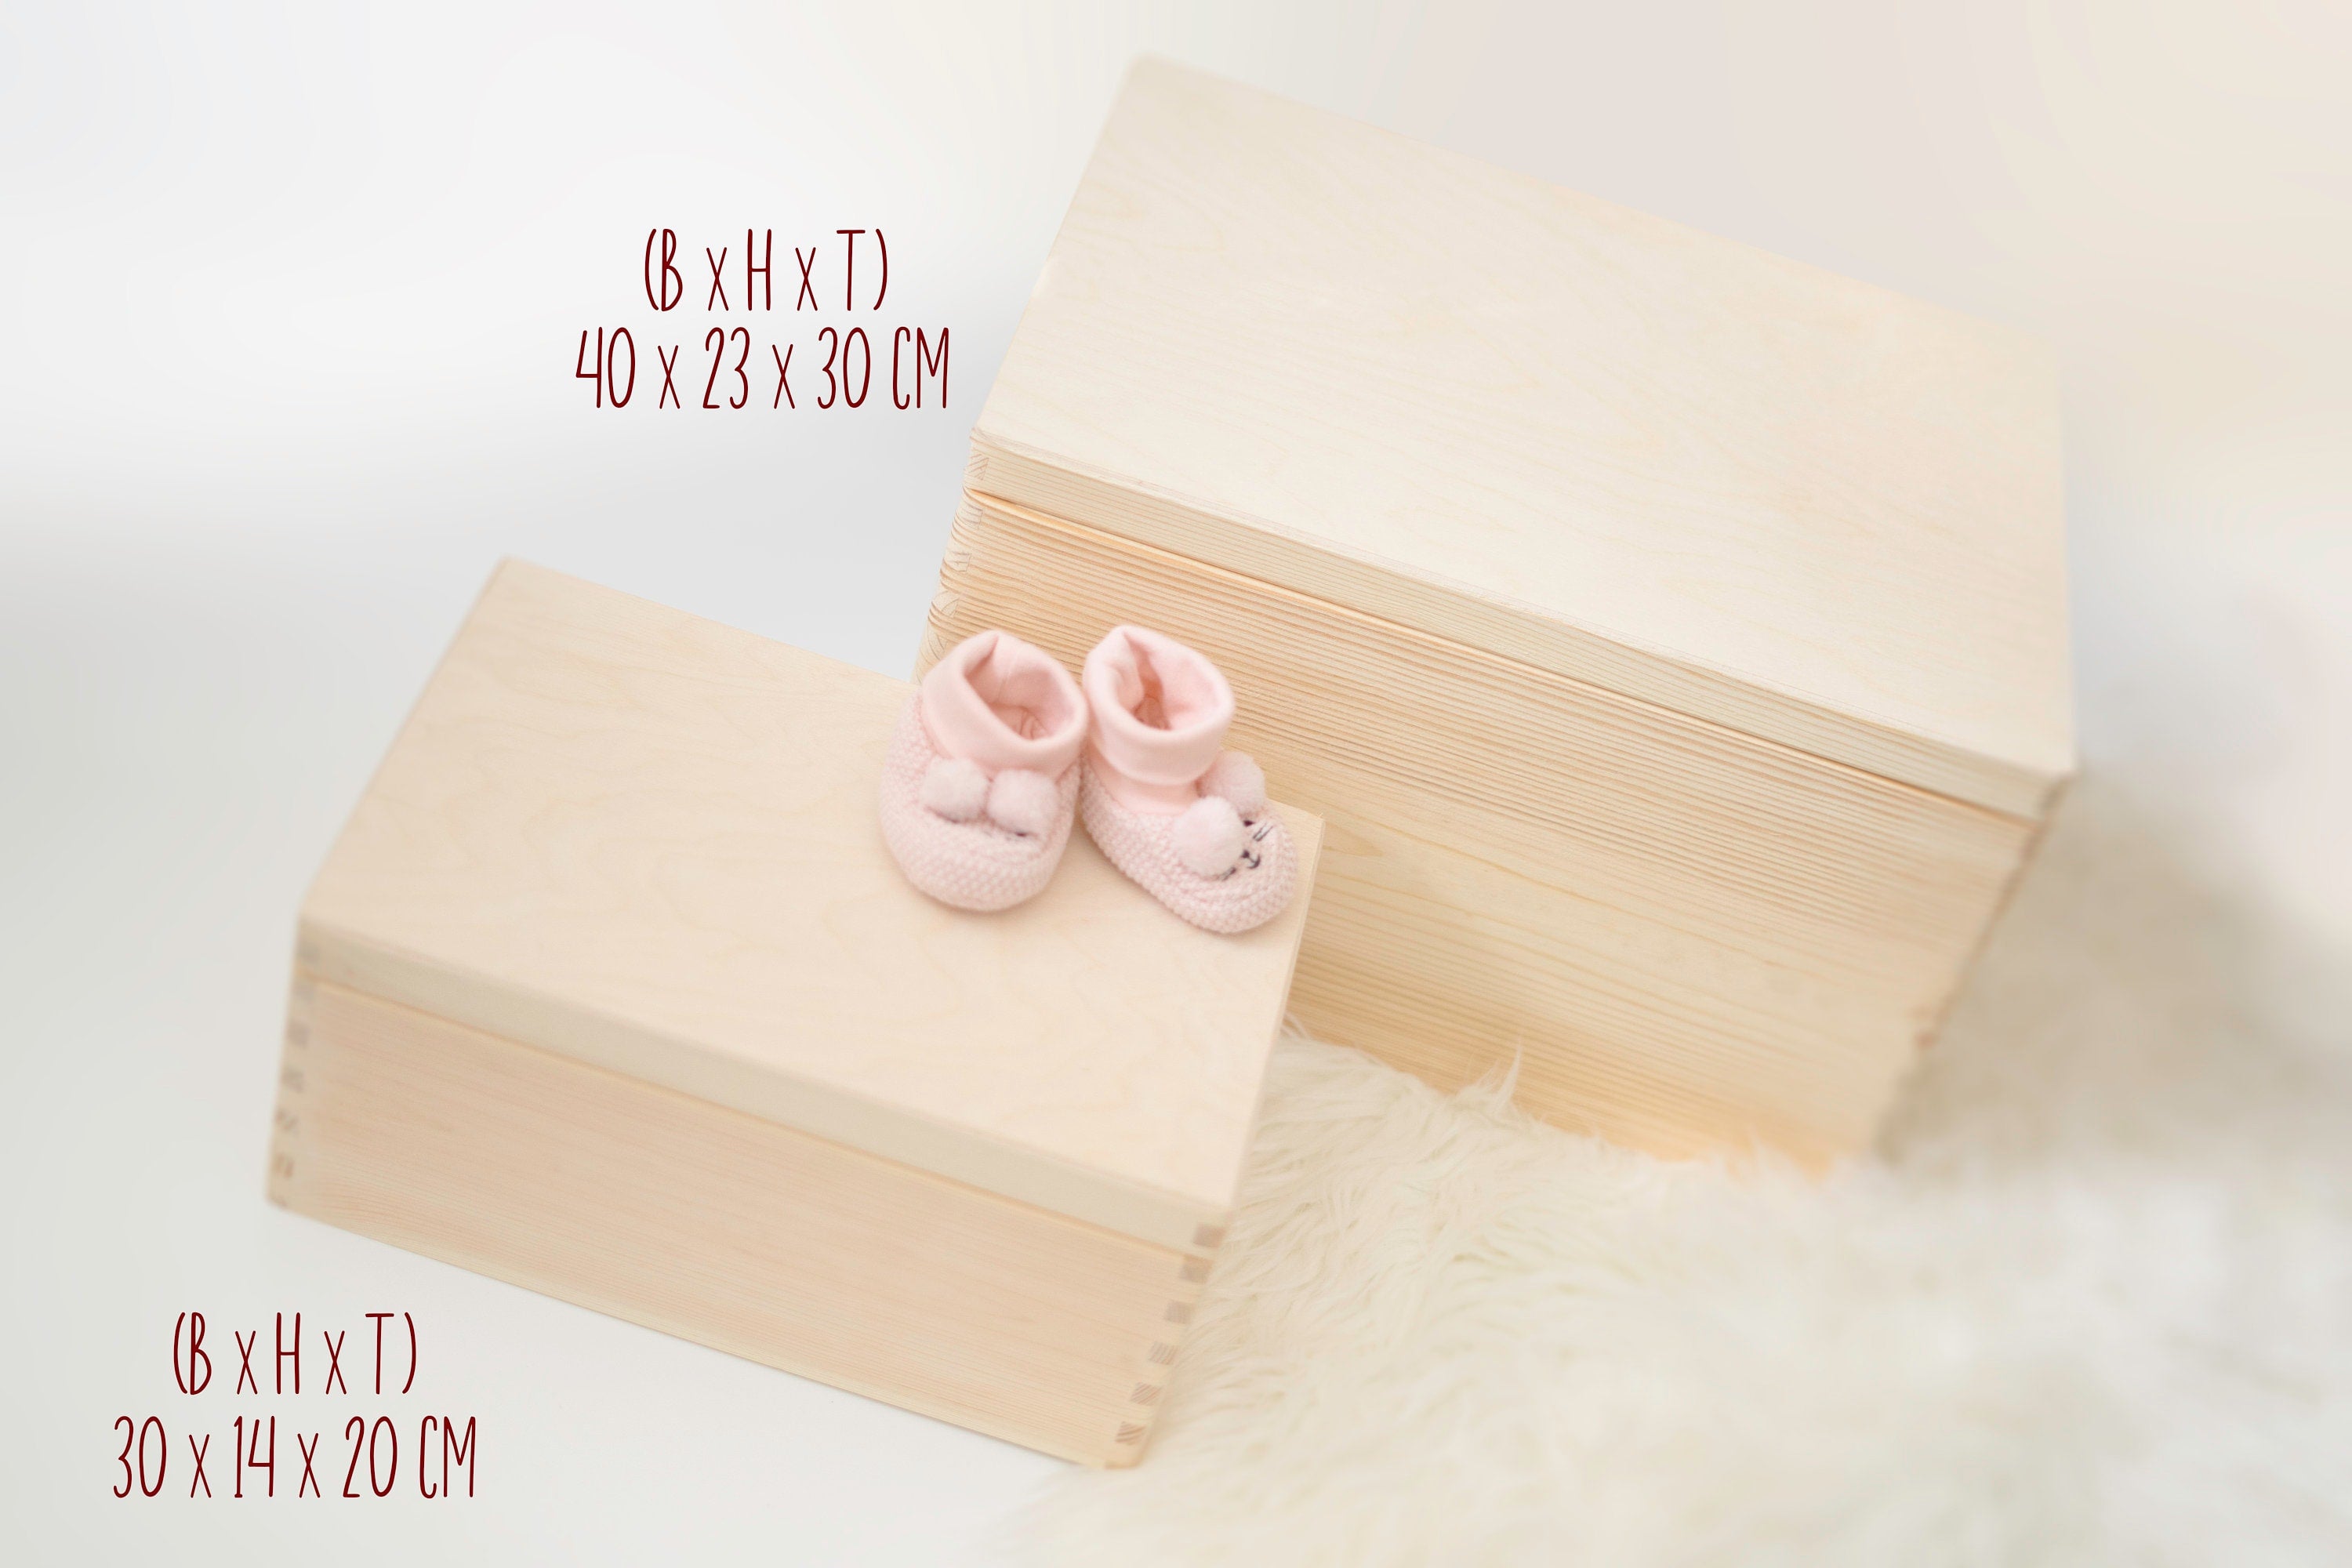 Personalisierte Erinnerungskiste für Kinder mit Fuchs - Taufgeschenk Geburtsgeschenk Weihnachtsgeschenk für Kinder Holzkiste Baby Geschenk